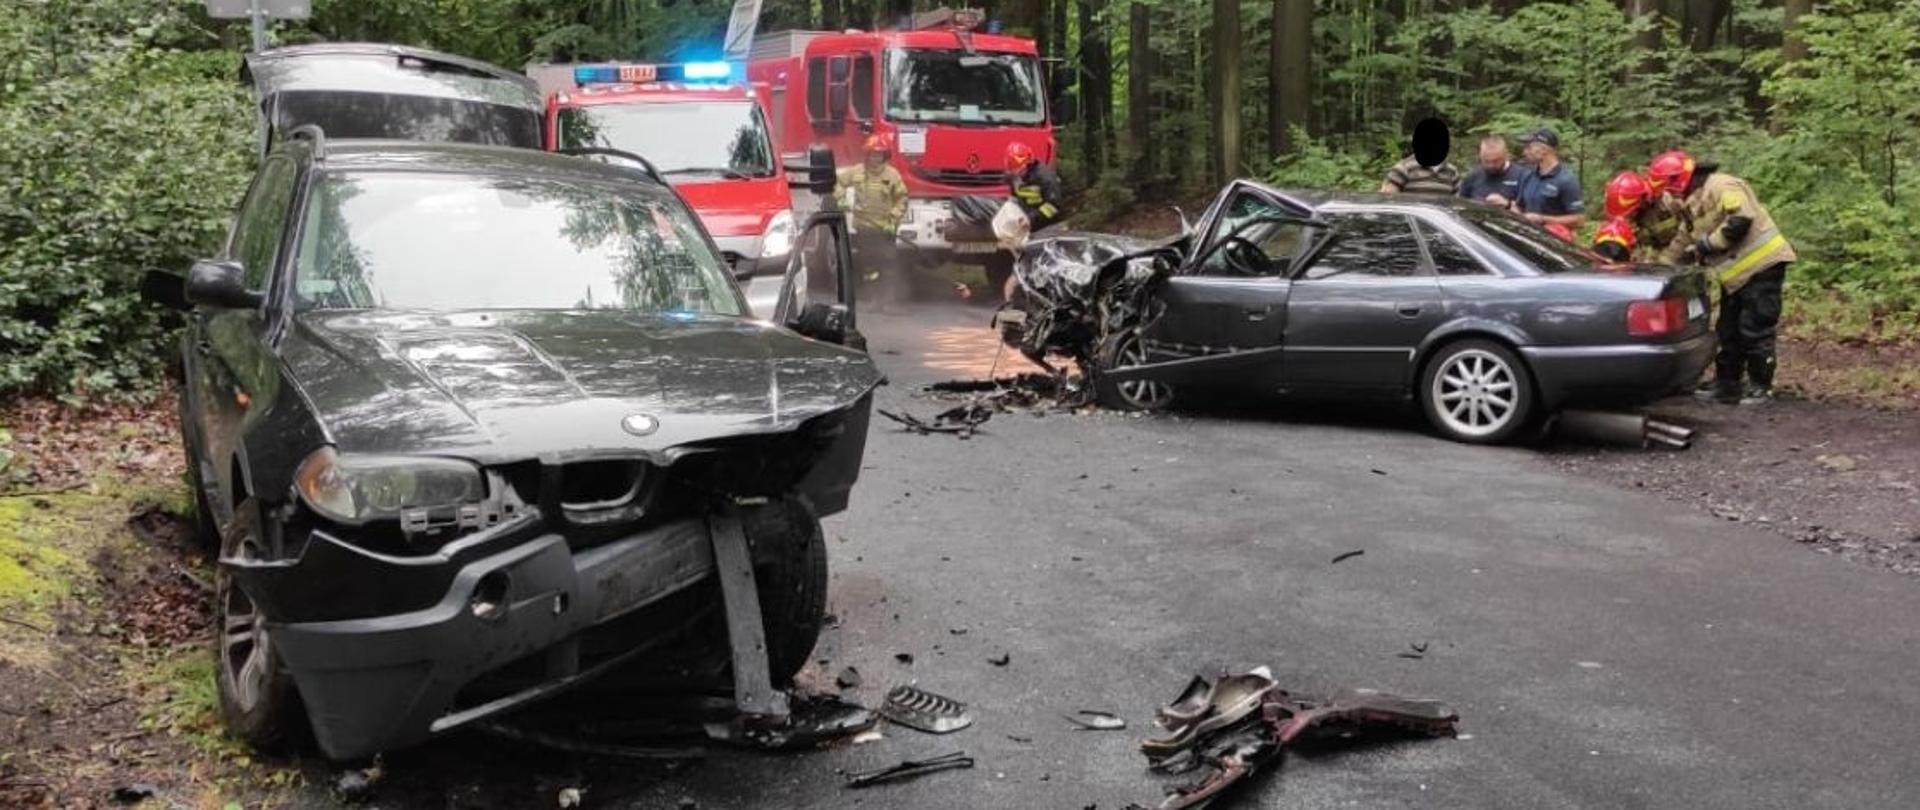 Na zdjęciu widać dwa samochody osobowe po zderzeniu czołowym. Jeden marki BMW a drugi Audi. Droga zablokowana w obu kierunkach. Na zdjęciu widać również dwa samochody straży pożarnej i strażaków podczas wykonywania czynności związanych z wypadkiem i udzielaniem pierwszej pomocy przedmedycznej.